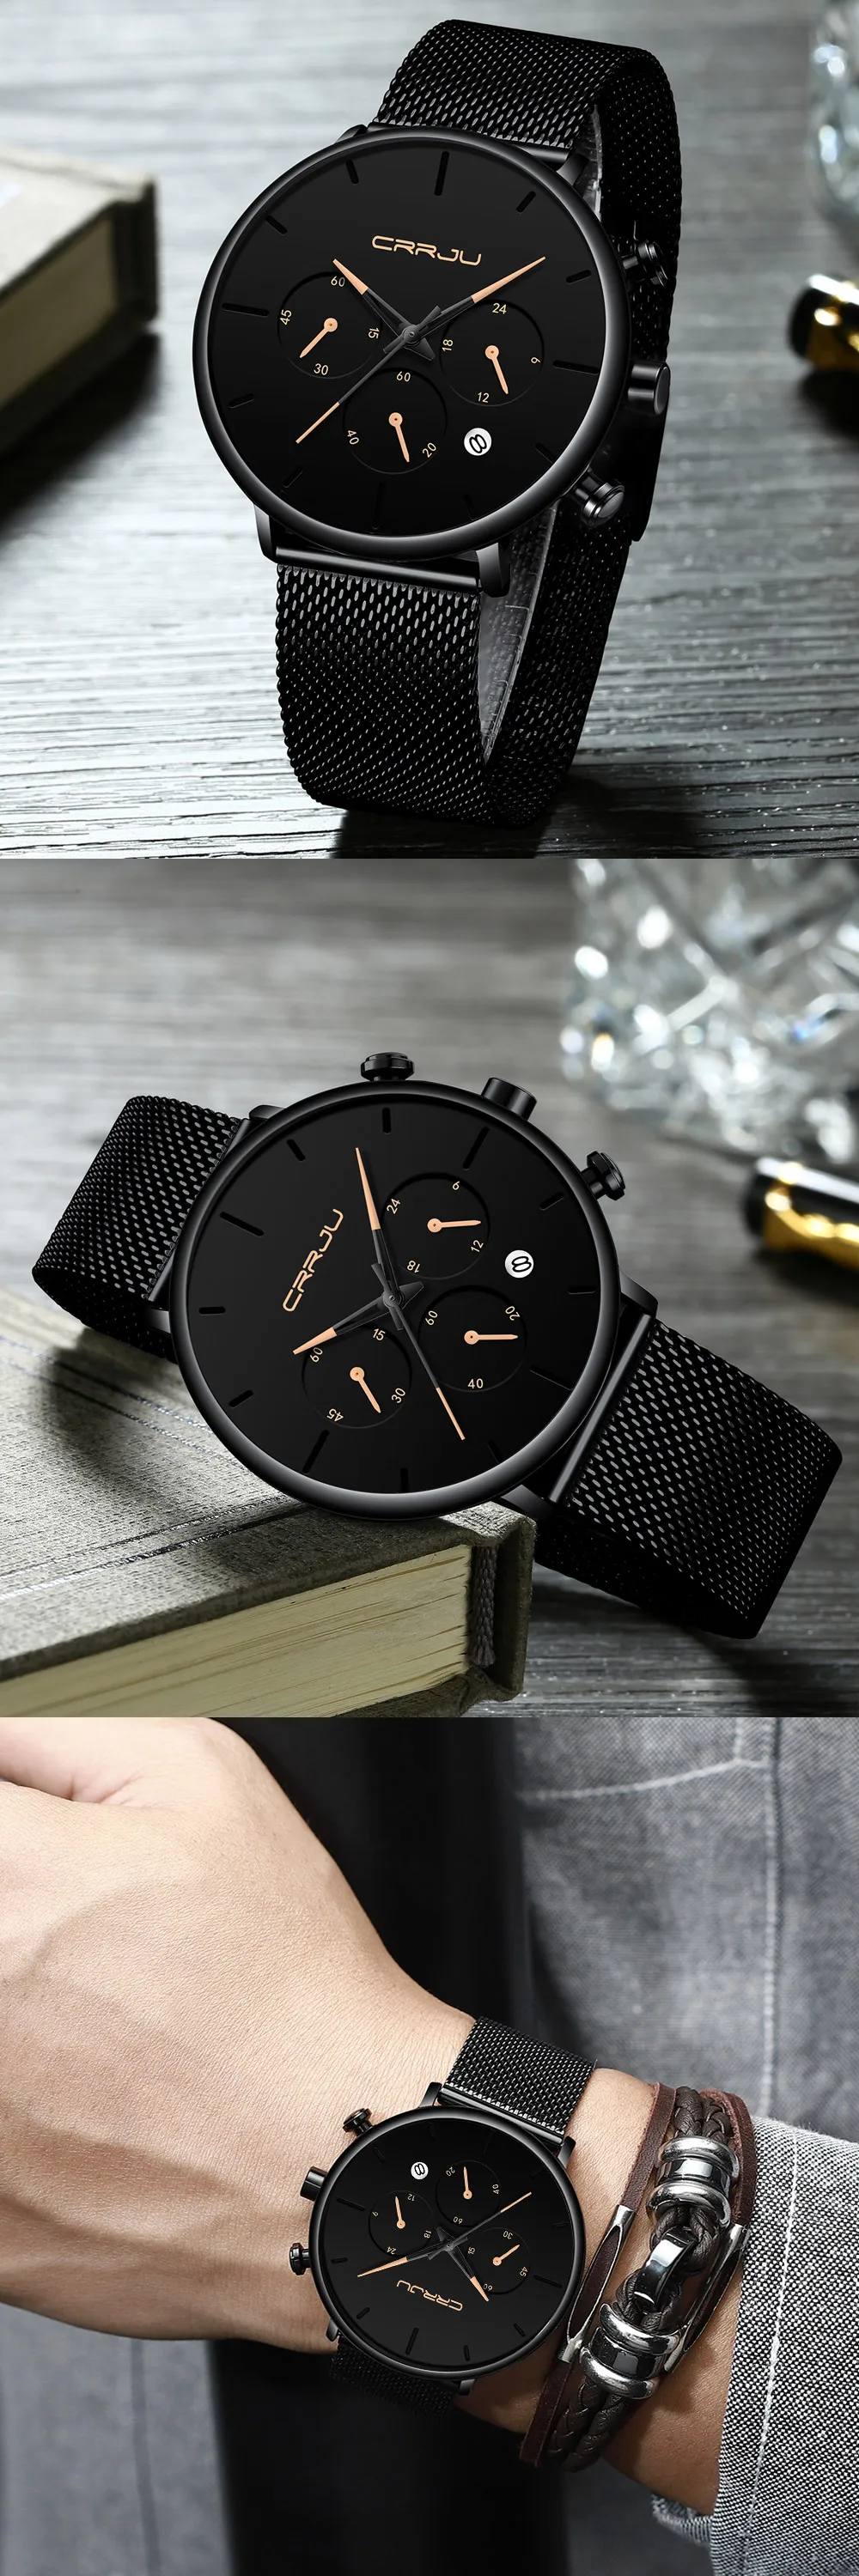 Crrju спортивные мужские s часы Топ бренд класса люкс водонепроницаемые спортивные часы для мужчин ультра тонкий циферблат Кварцевые часы повседневное Relogio Masculino